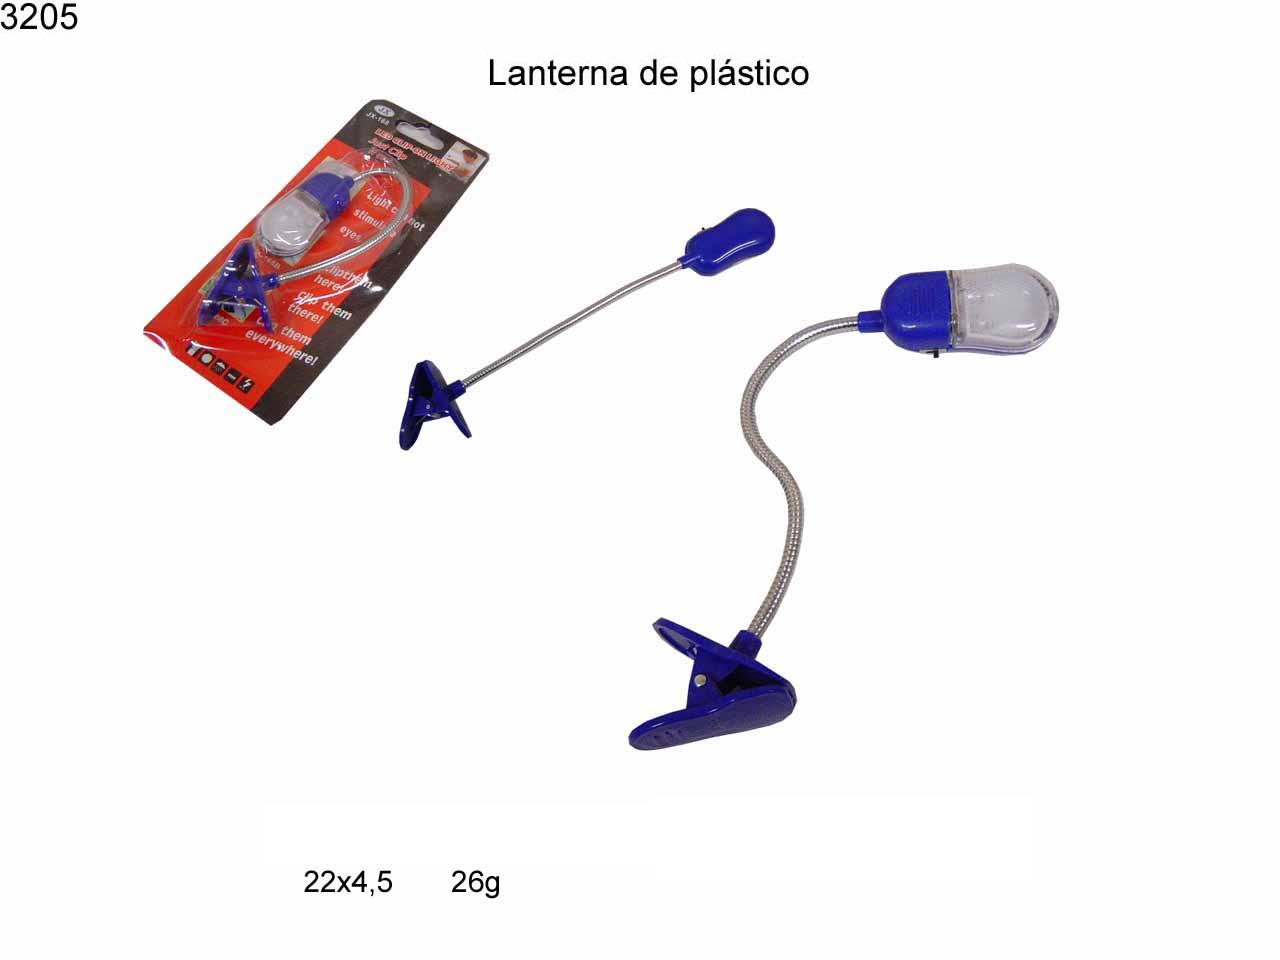 Lanterna de plastico (3205)